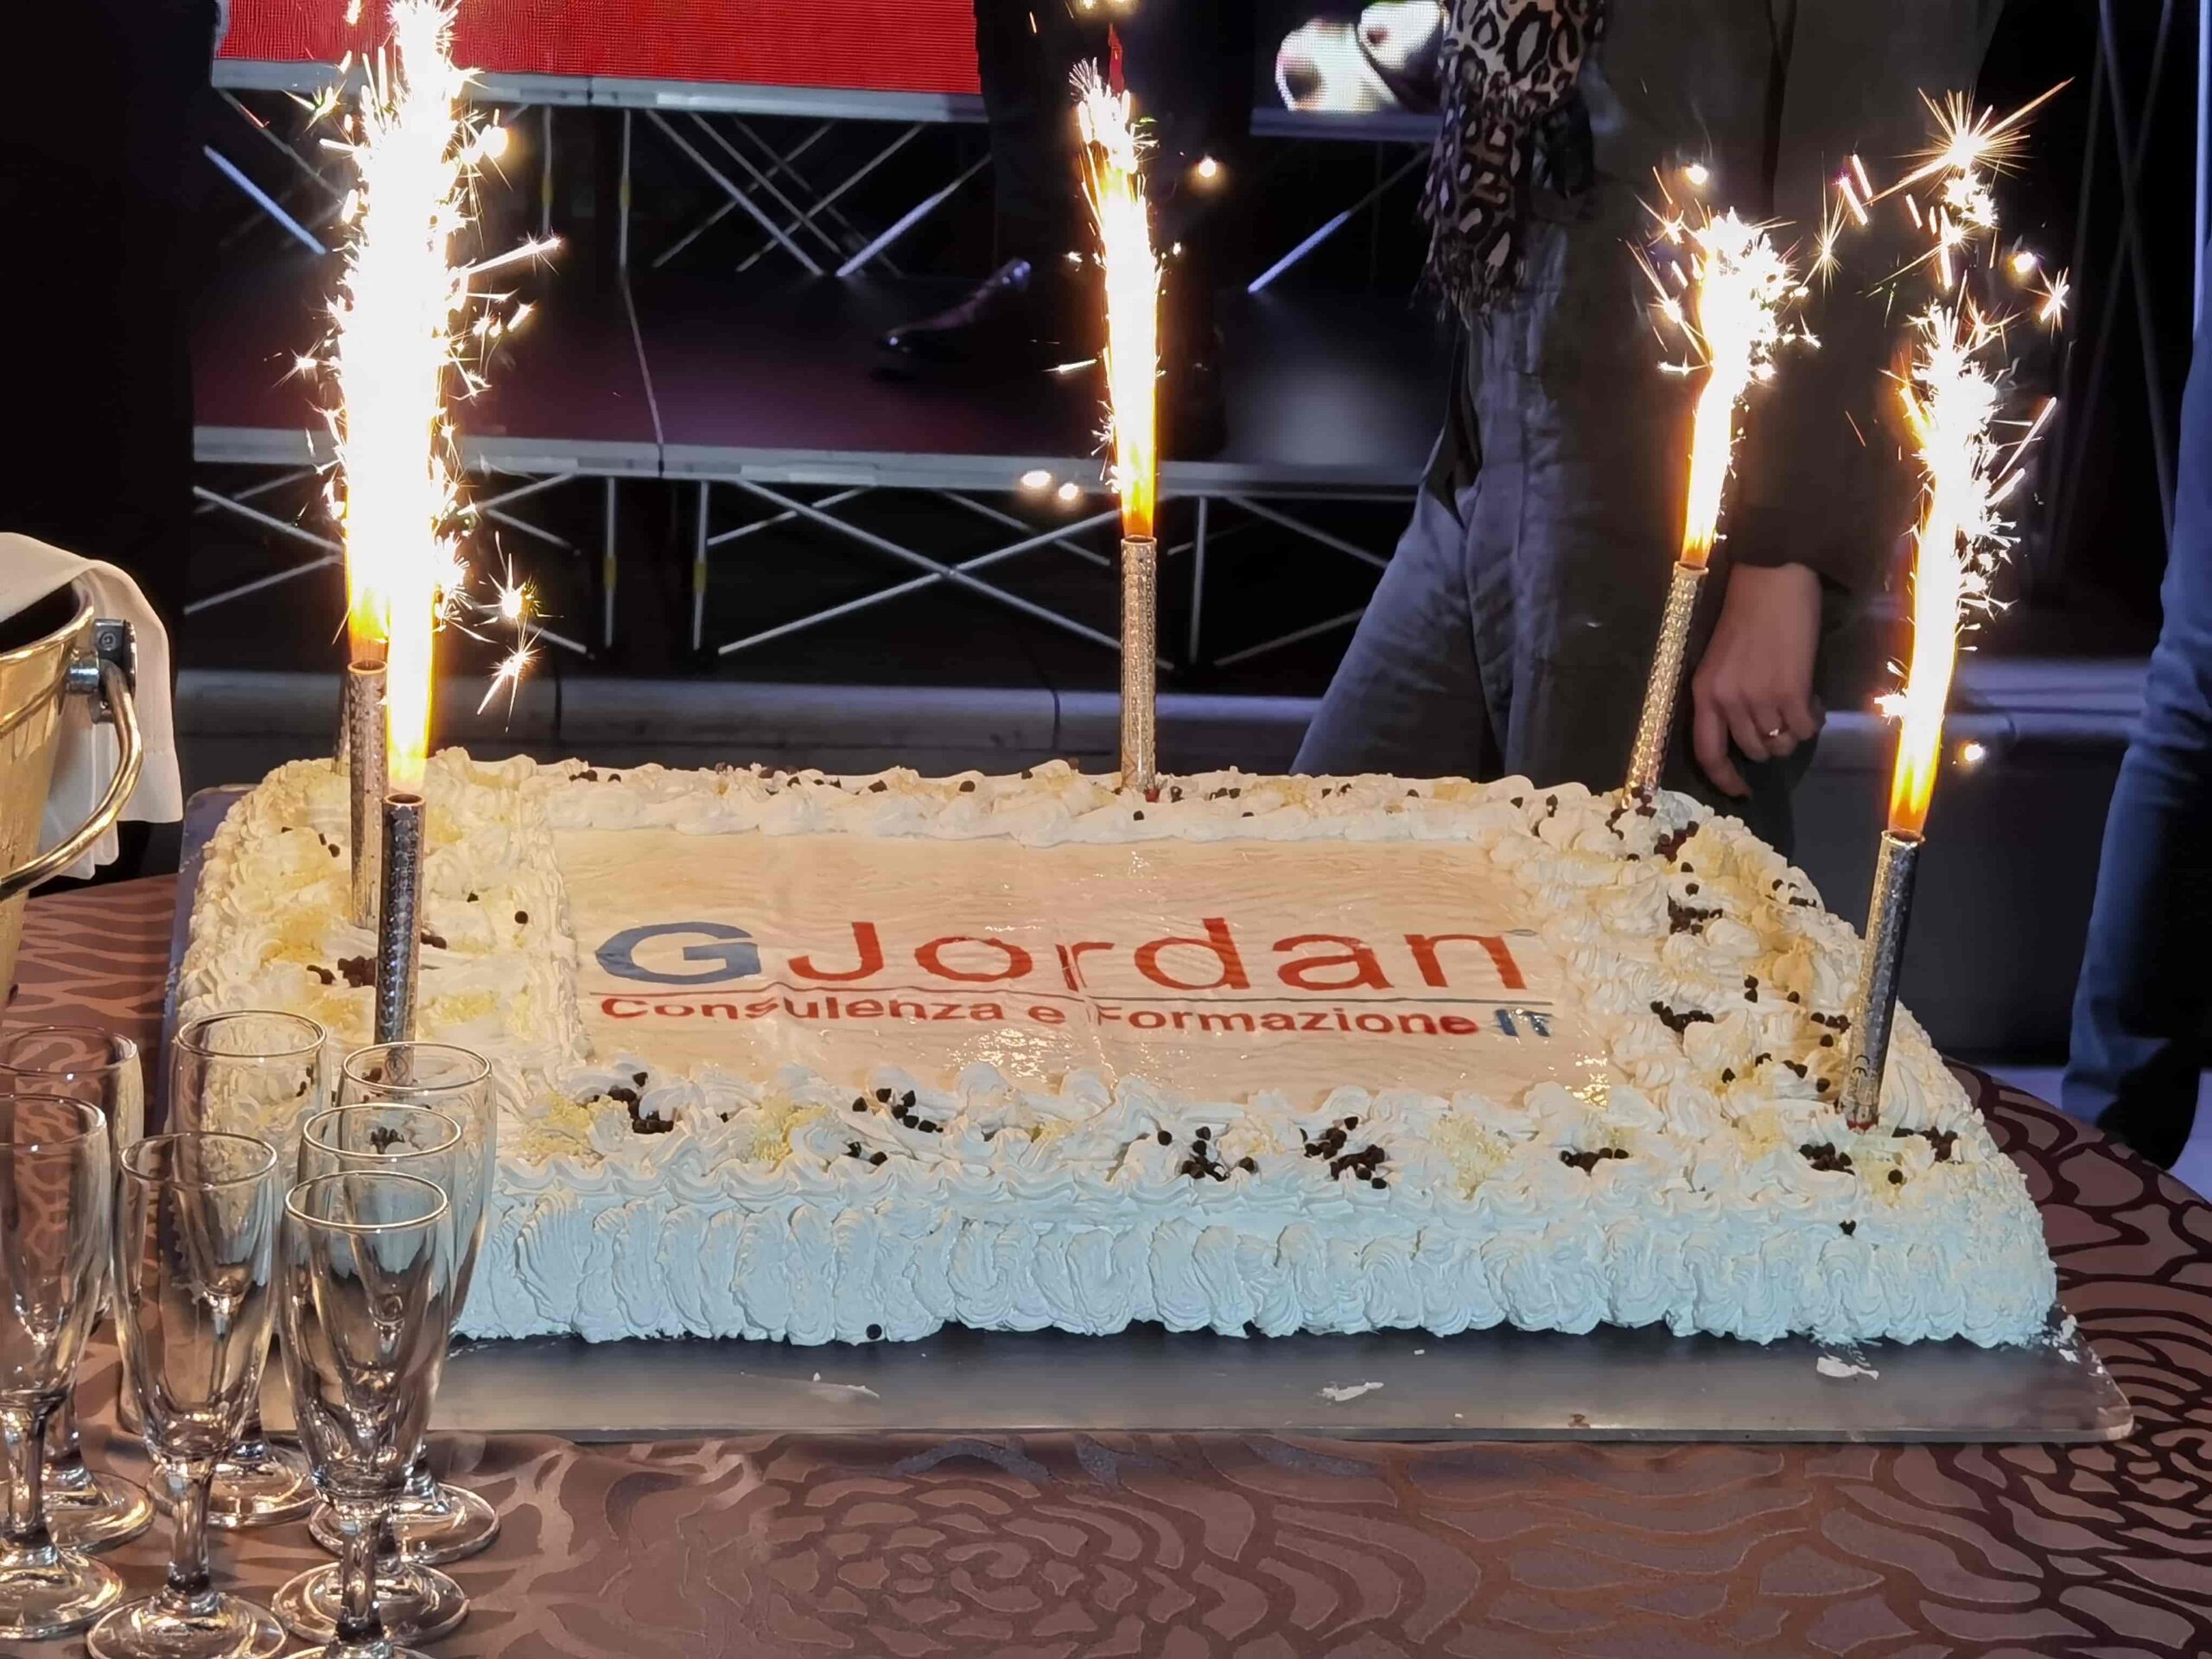 La Gjordan festeggia da Rosolino i risultati raggiunti nella consulenza e formazione SAP